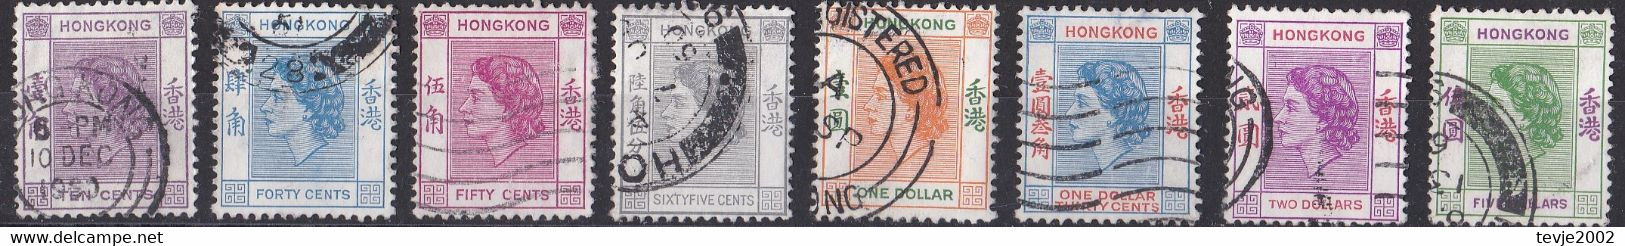 Hongkong 1954 - Lot Aus Mi.Nr. 179 - 190 - Gestempelt Used - Gebraucht